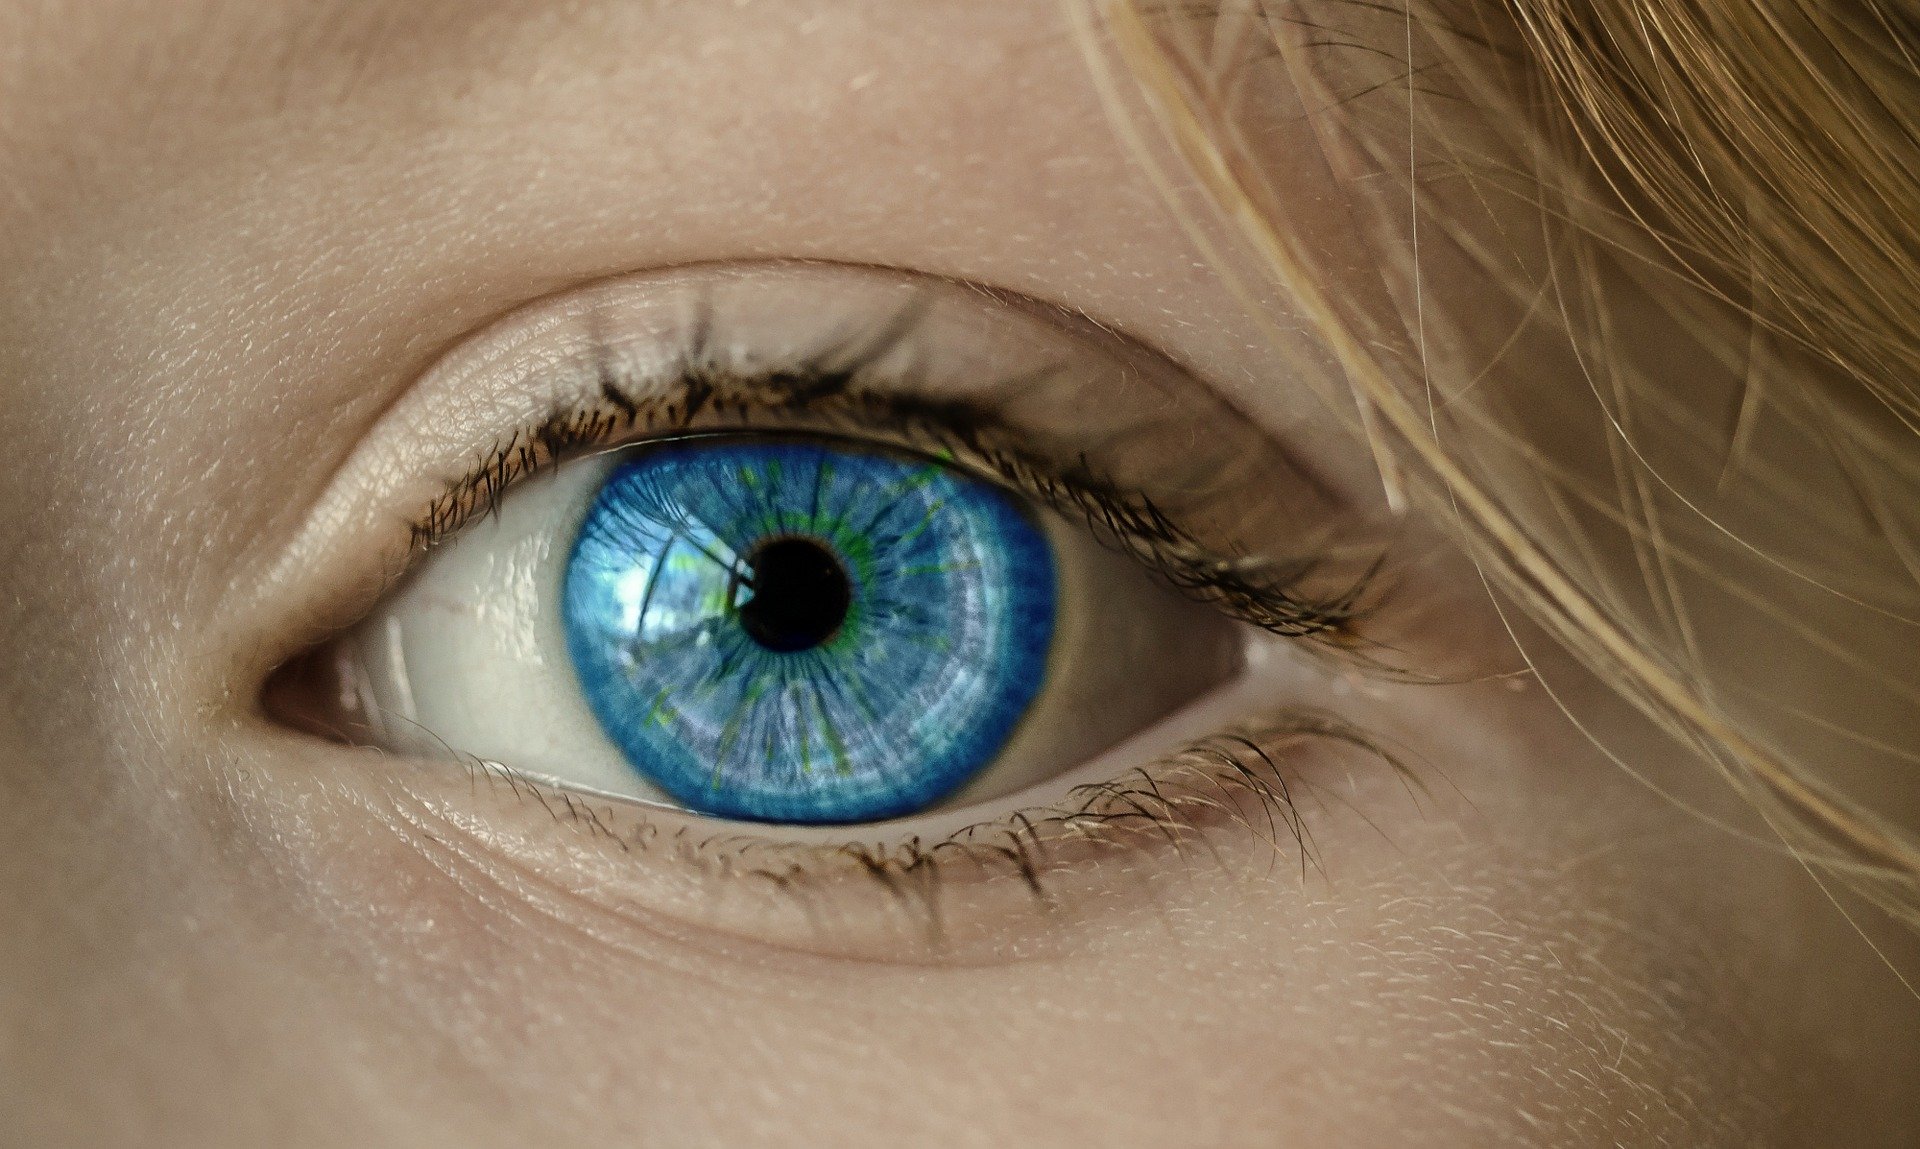 Tecnología de seguimiento ocular: qué es y cómo la veremos en nuestras ciudades